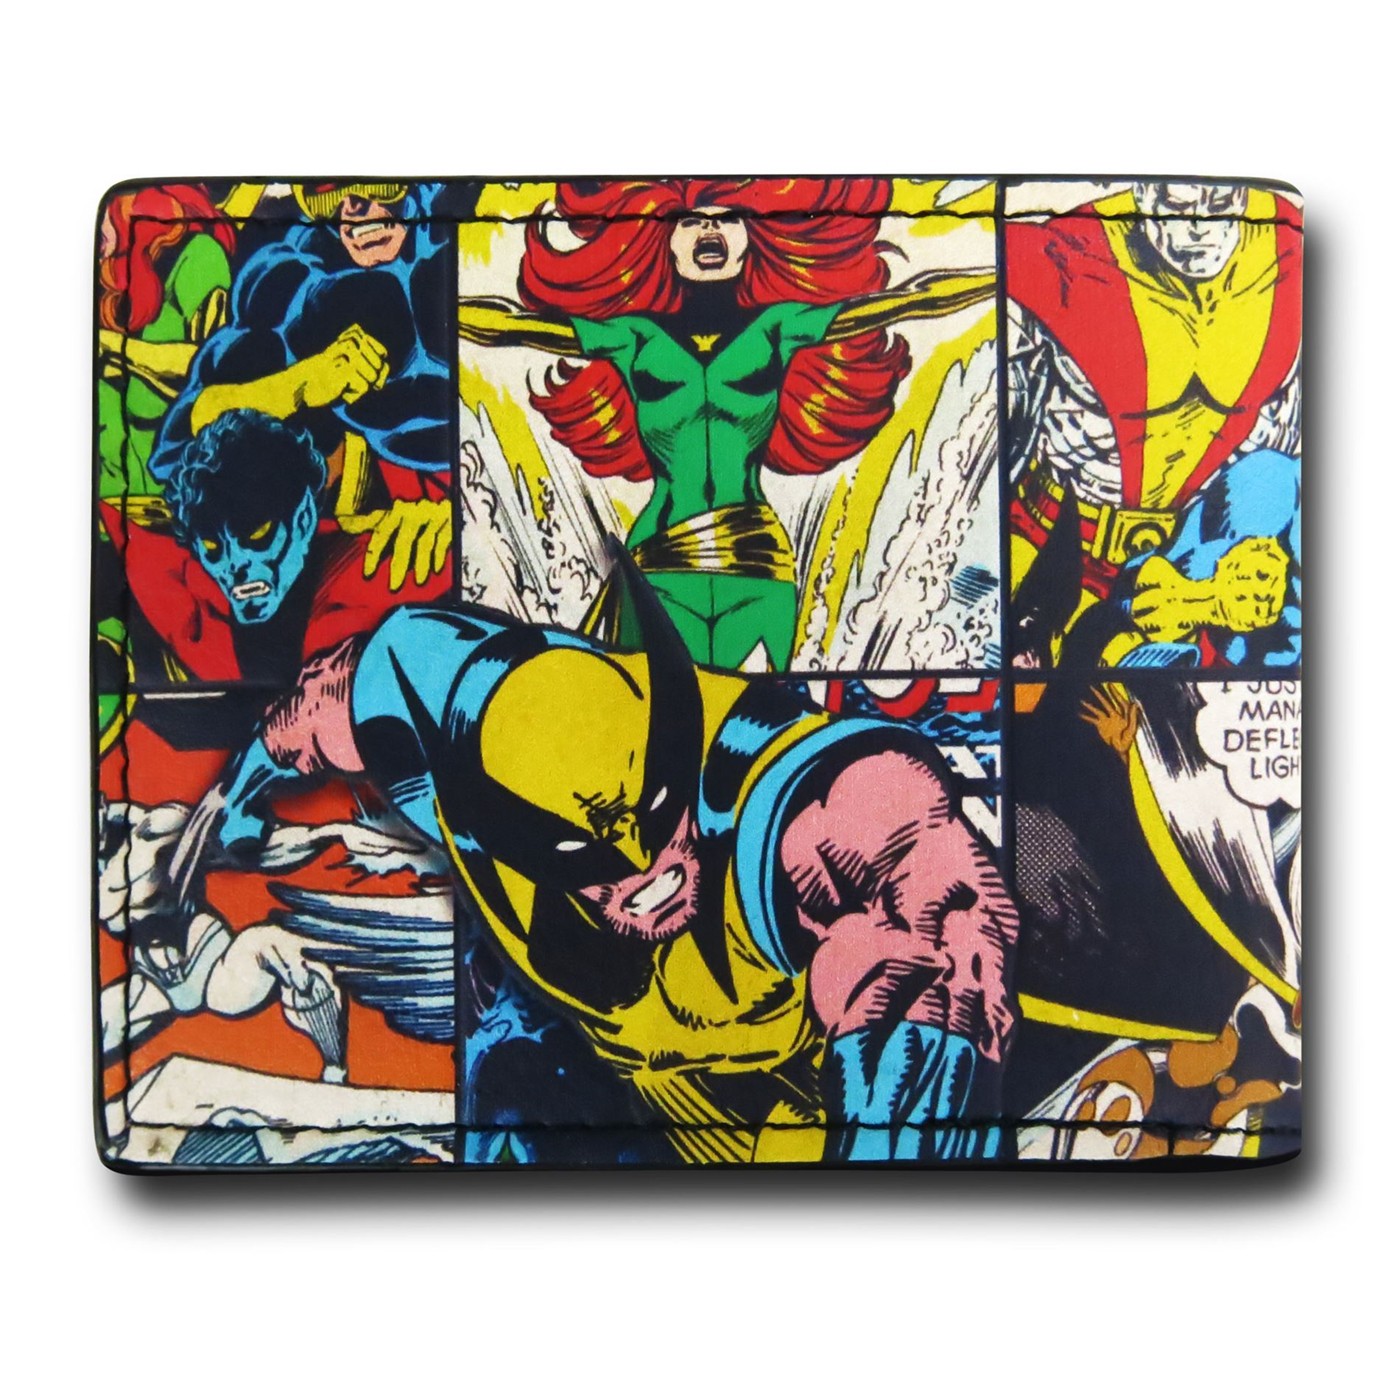 X-Men Comic Collage Bi-Fold Wallet